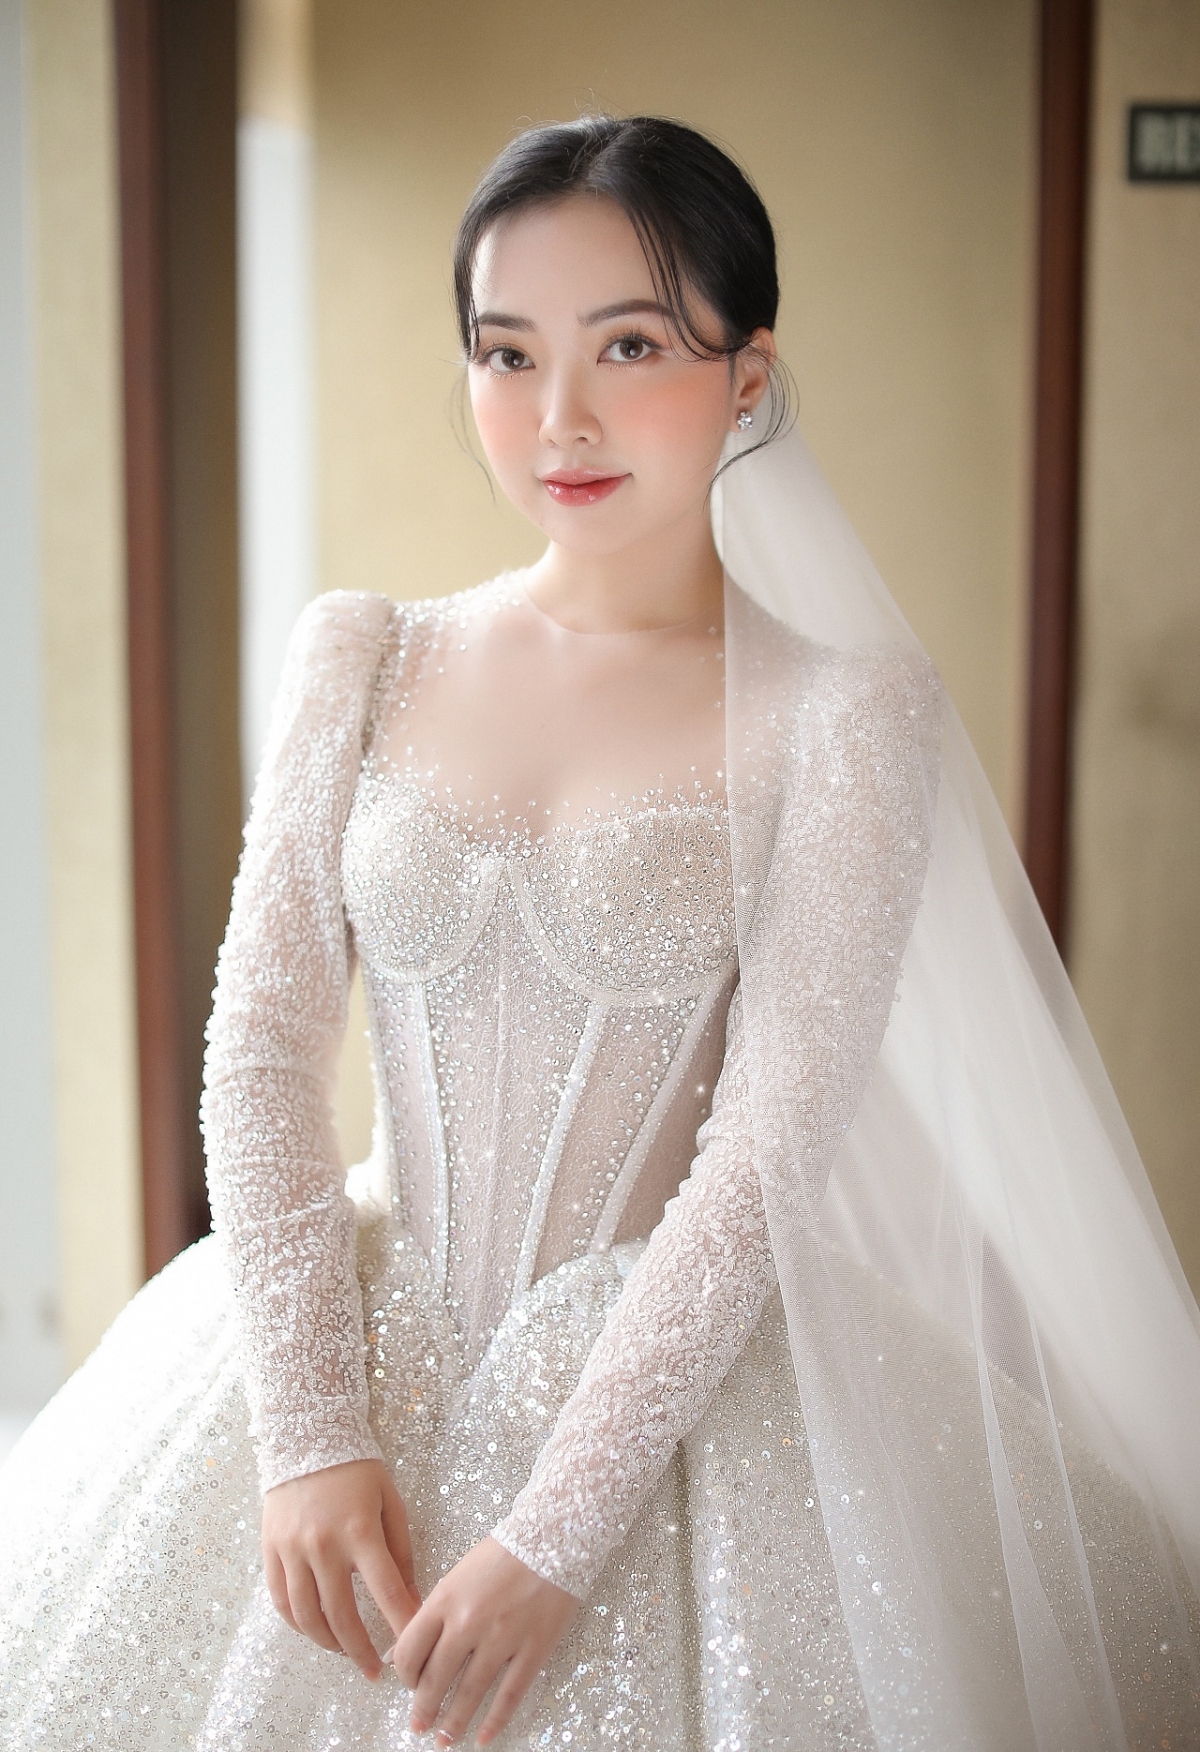 Cận cảnh váy cưới gần 1 tỷ đồng của Mai Hà Trang trong đám cưới với Hà Đức Chinh